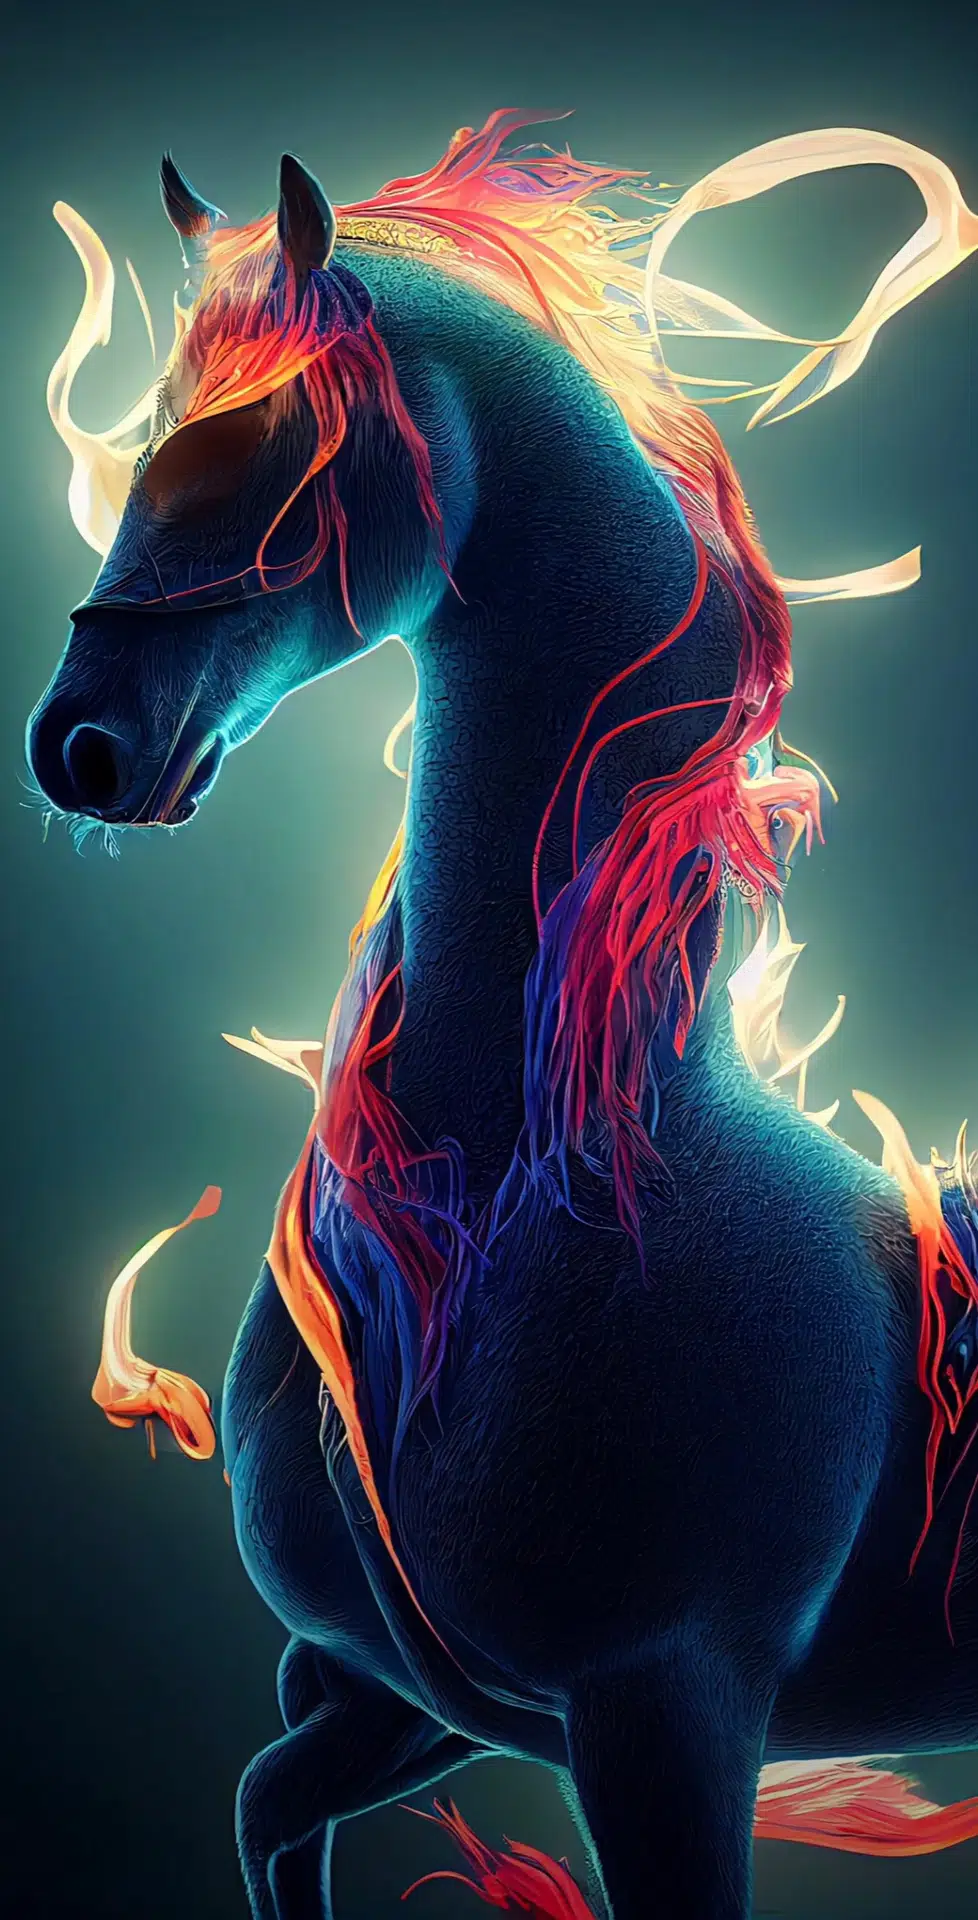 300.000+ ảnh đẹp nhất về Con Ngựa · Tải xuống miễn phí 100% · Ảnh có sẵn  của Pexels